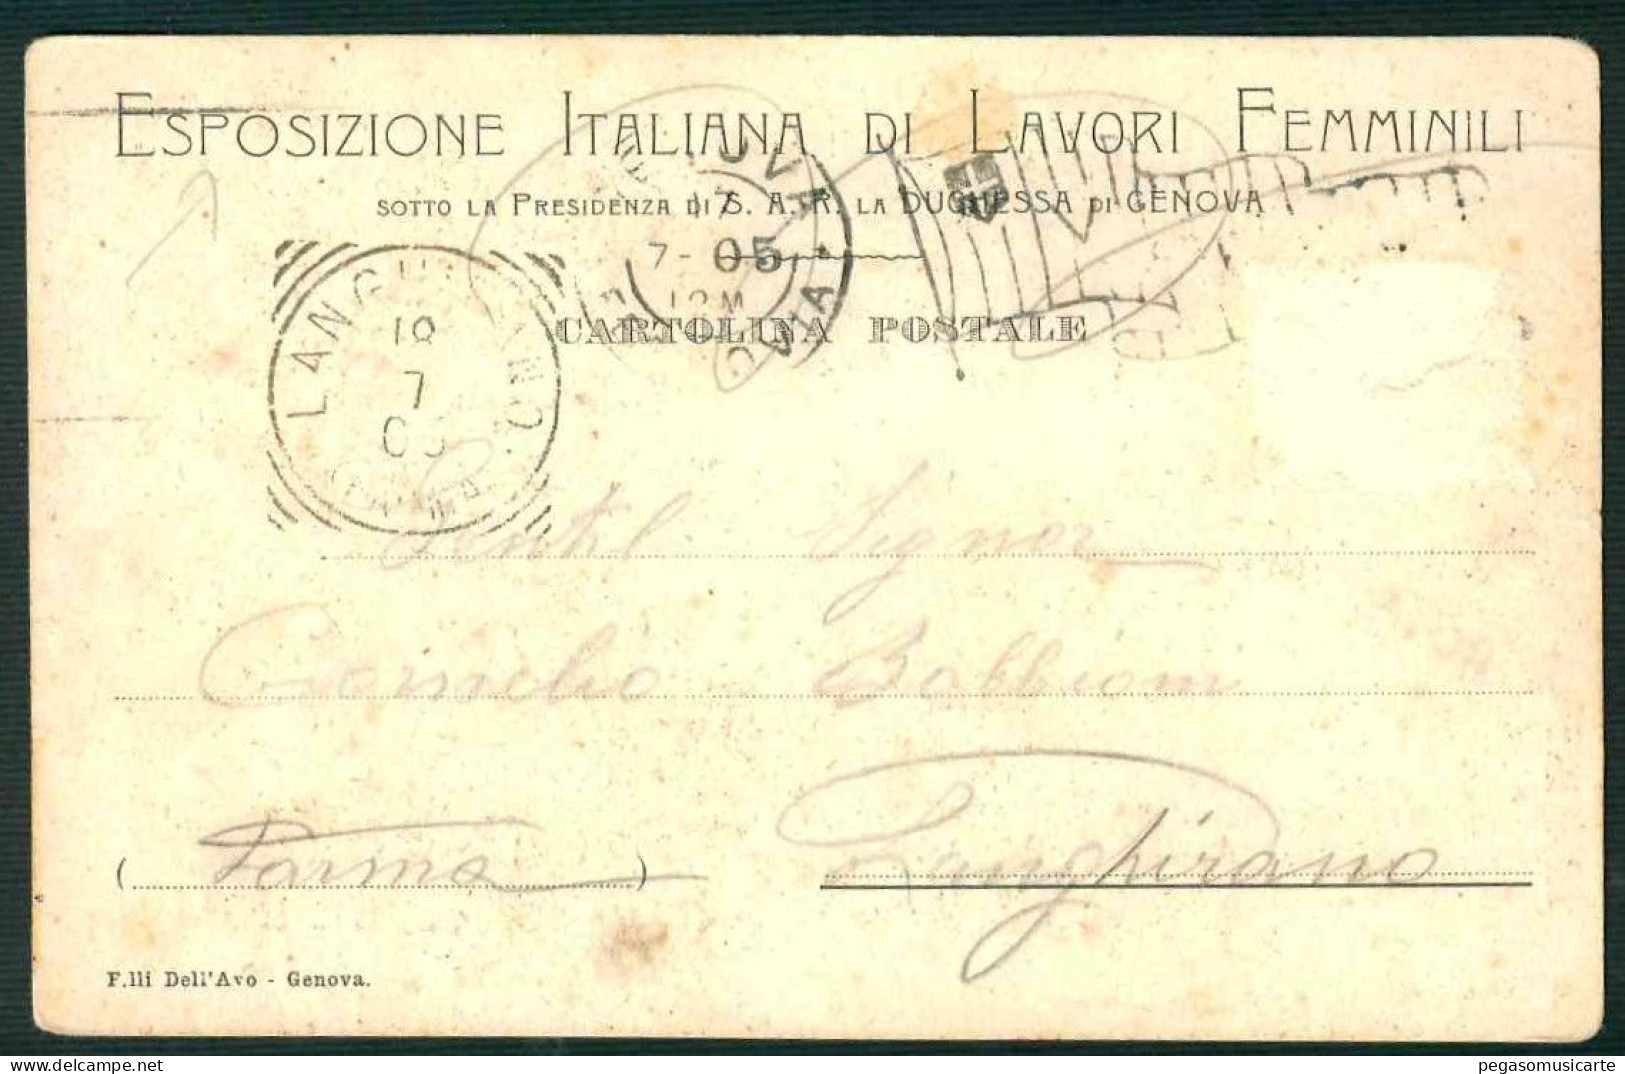 BF112 ESPOSIZIONE ITALIANA DI LAVORI FEMMINILI SOTTO LA PRESIDENZA DI S.A.R.DUCHESSA DI GENOVA 1905 - Patriotiques